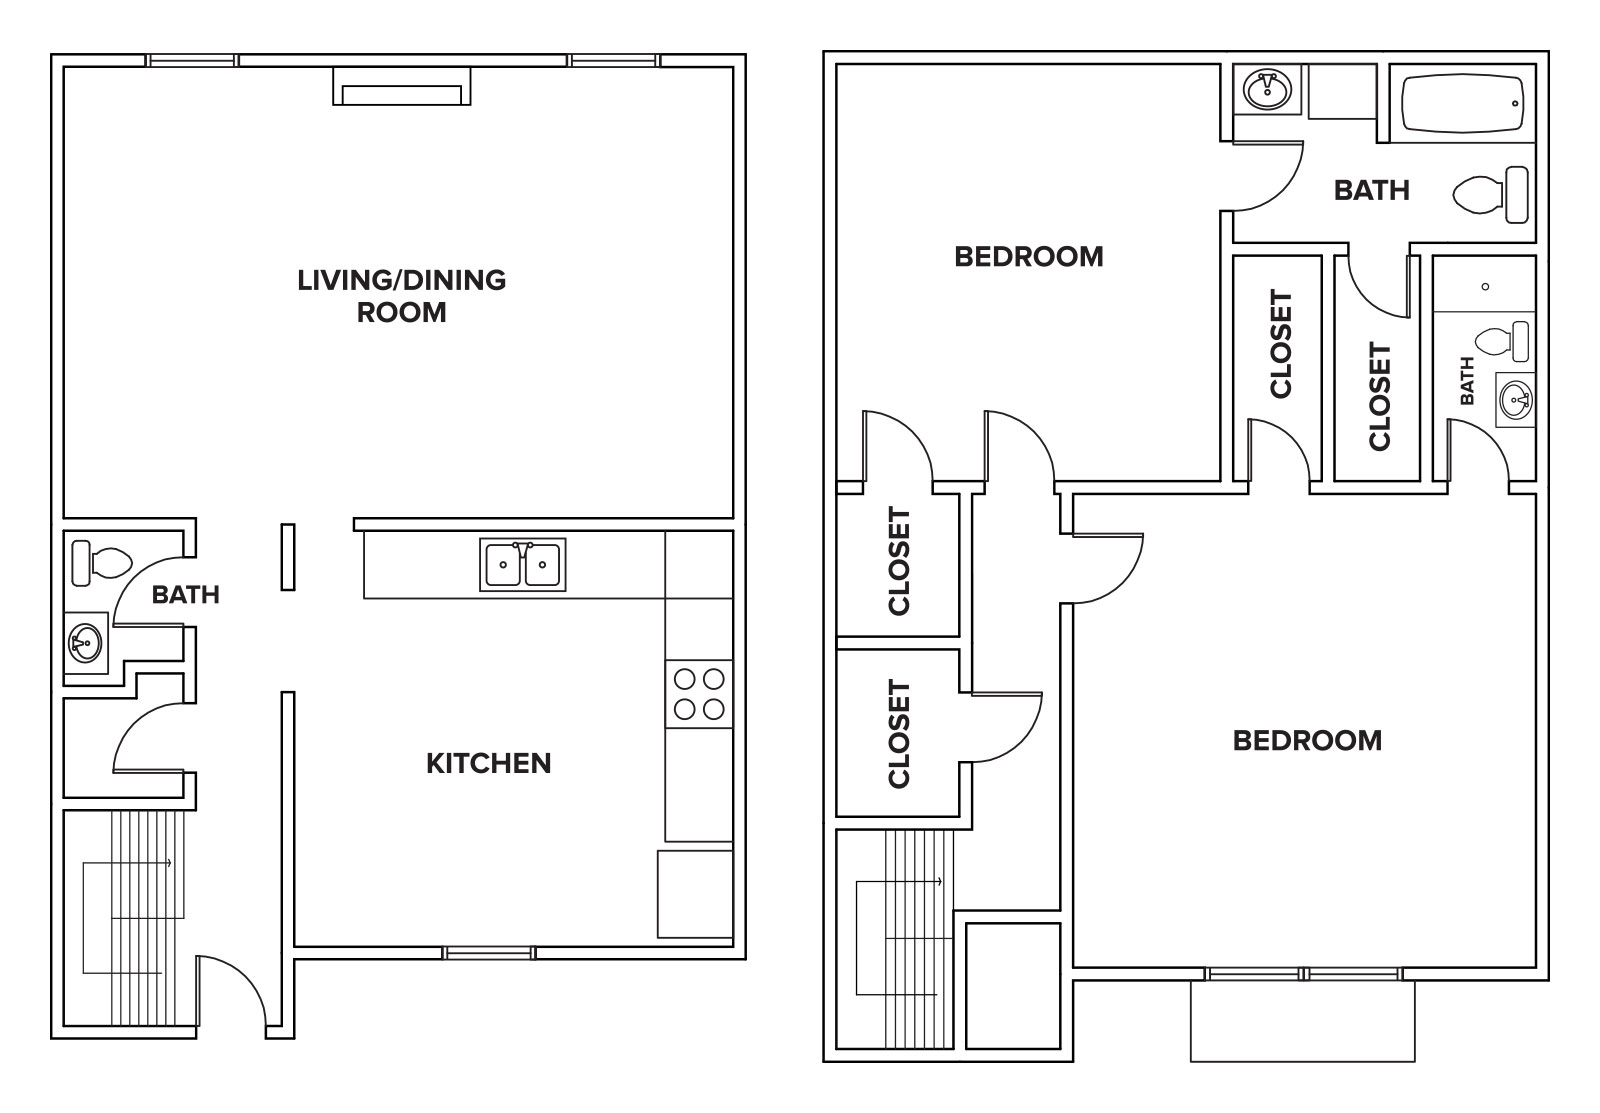 Villas-of-Oak-Creste_Floor-Plans_V2-TOWNHOME-1455-sq-ft.jpg